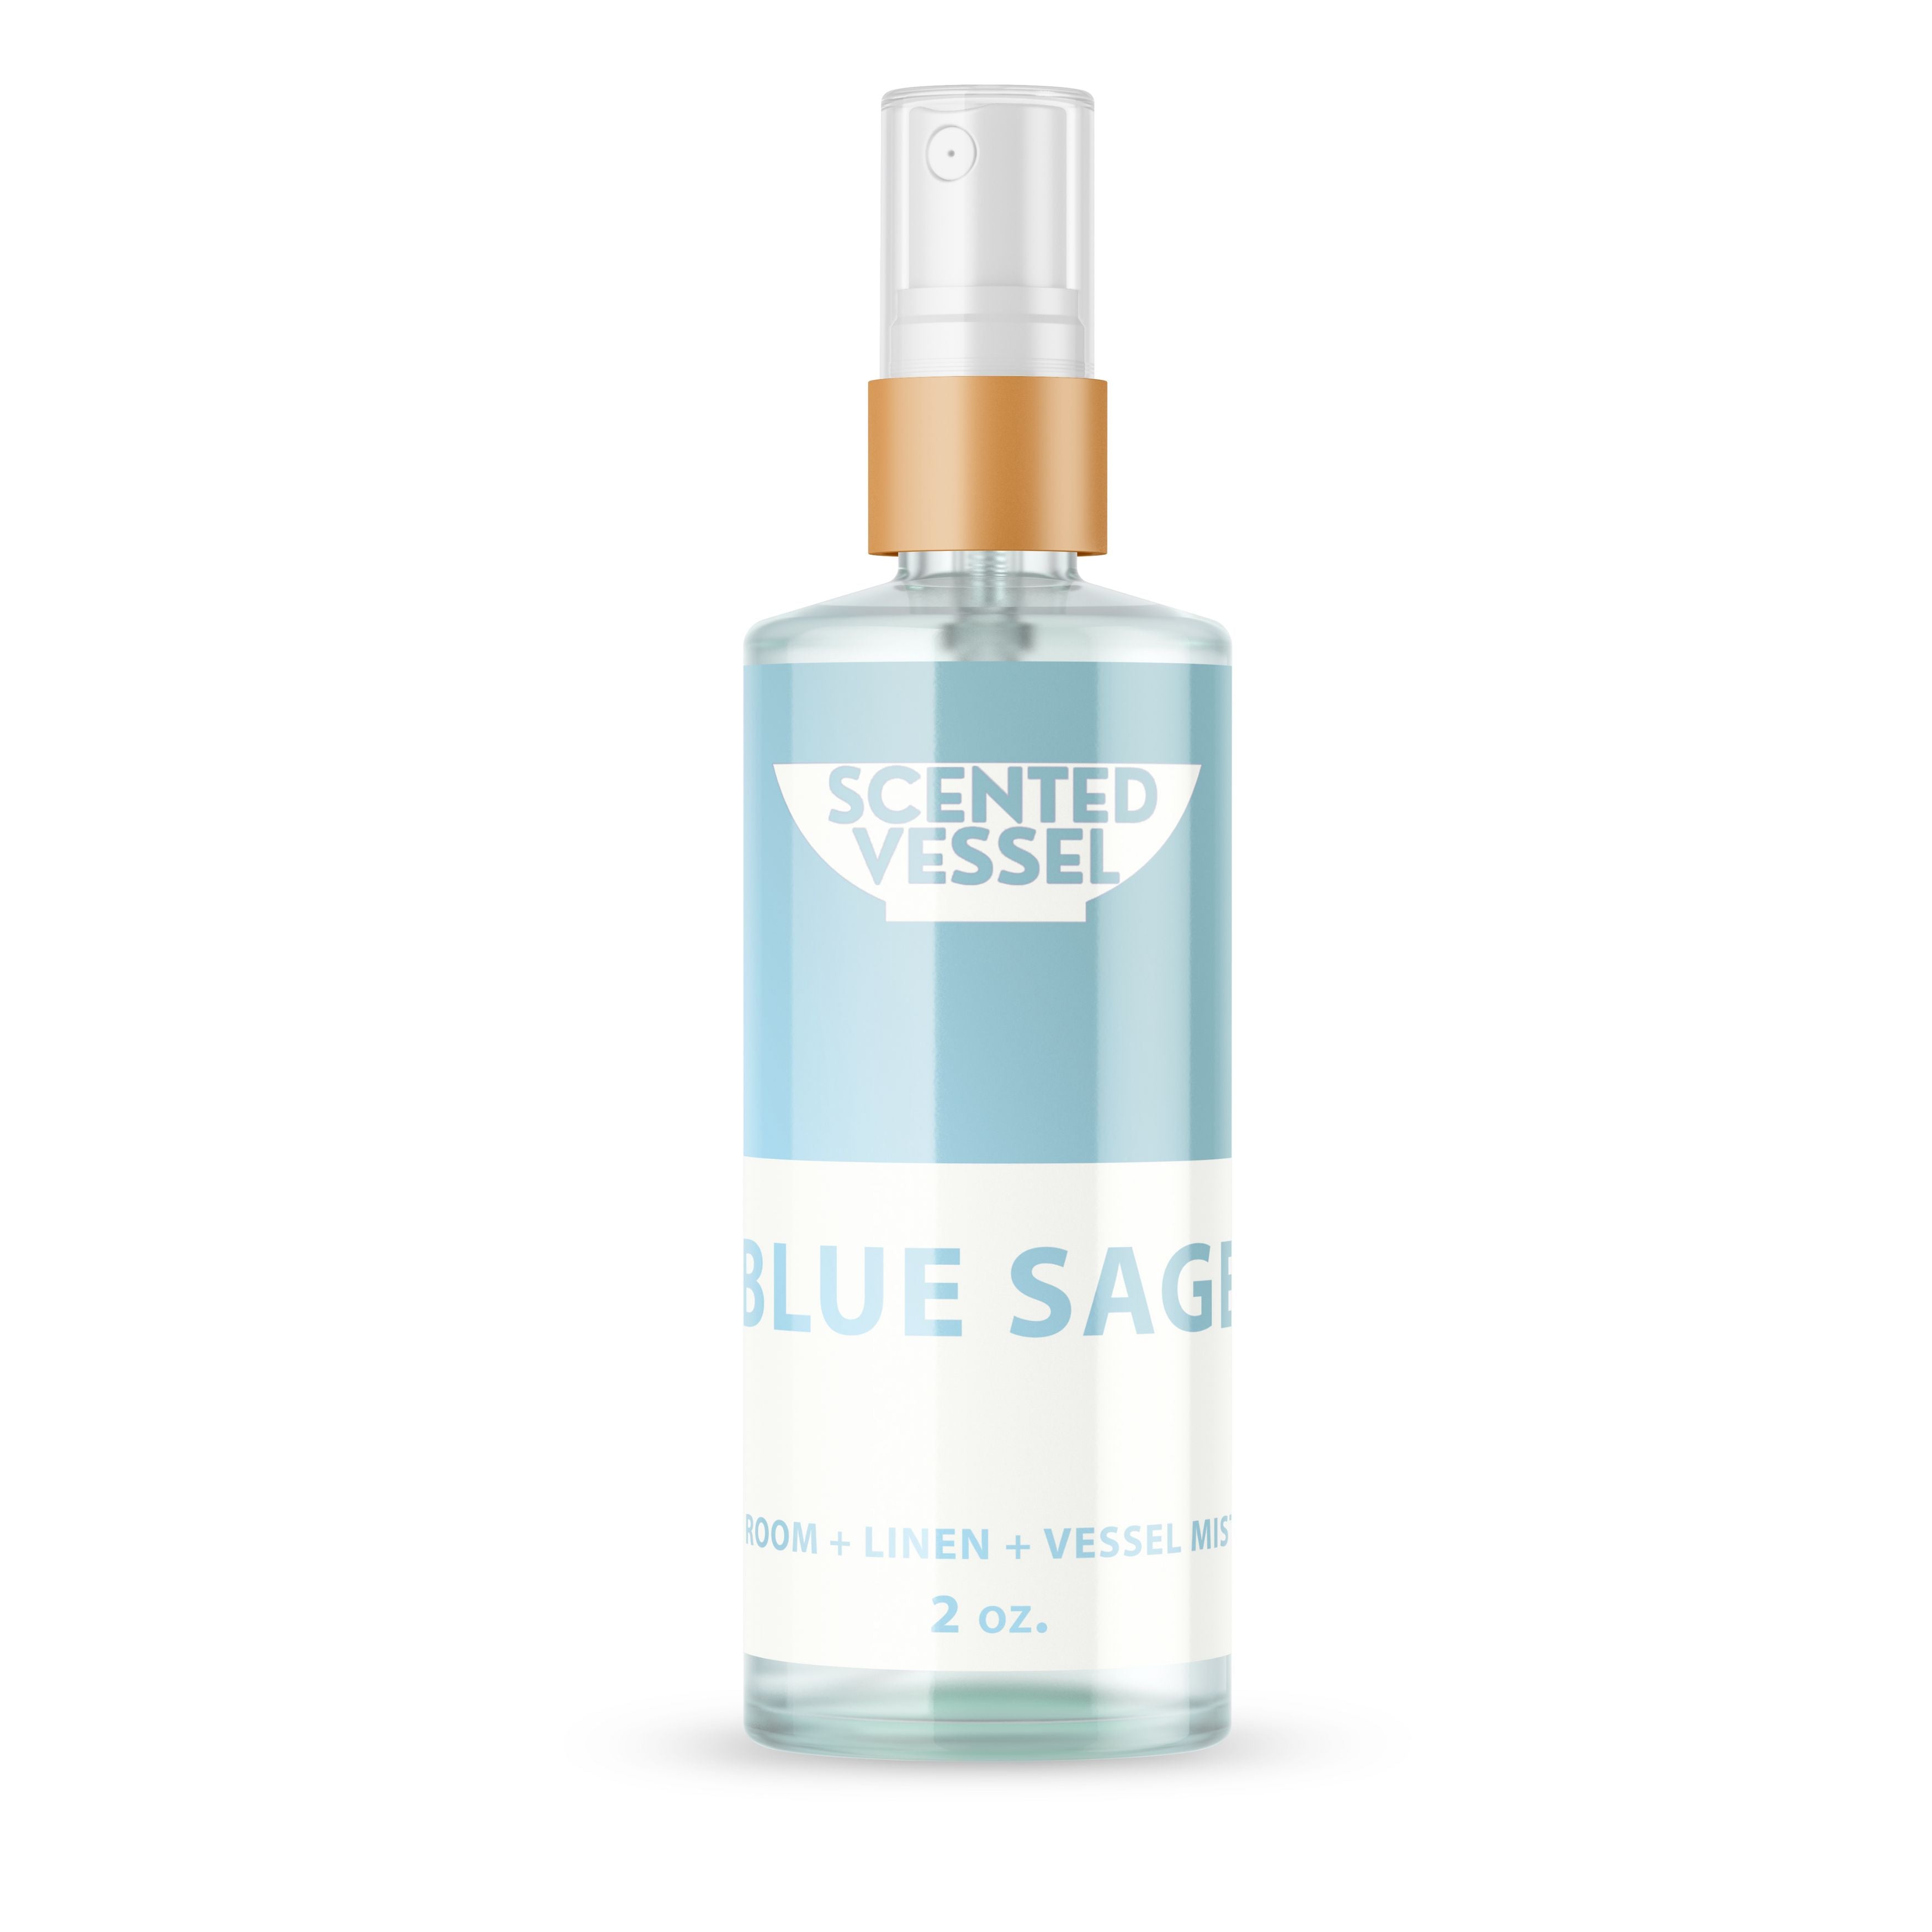 Blue Sage 2oz Fragrance Mist by Scented Vessel